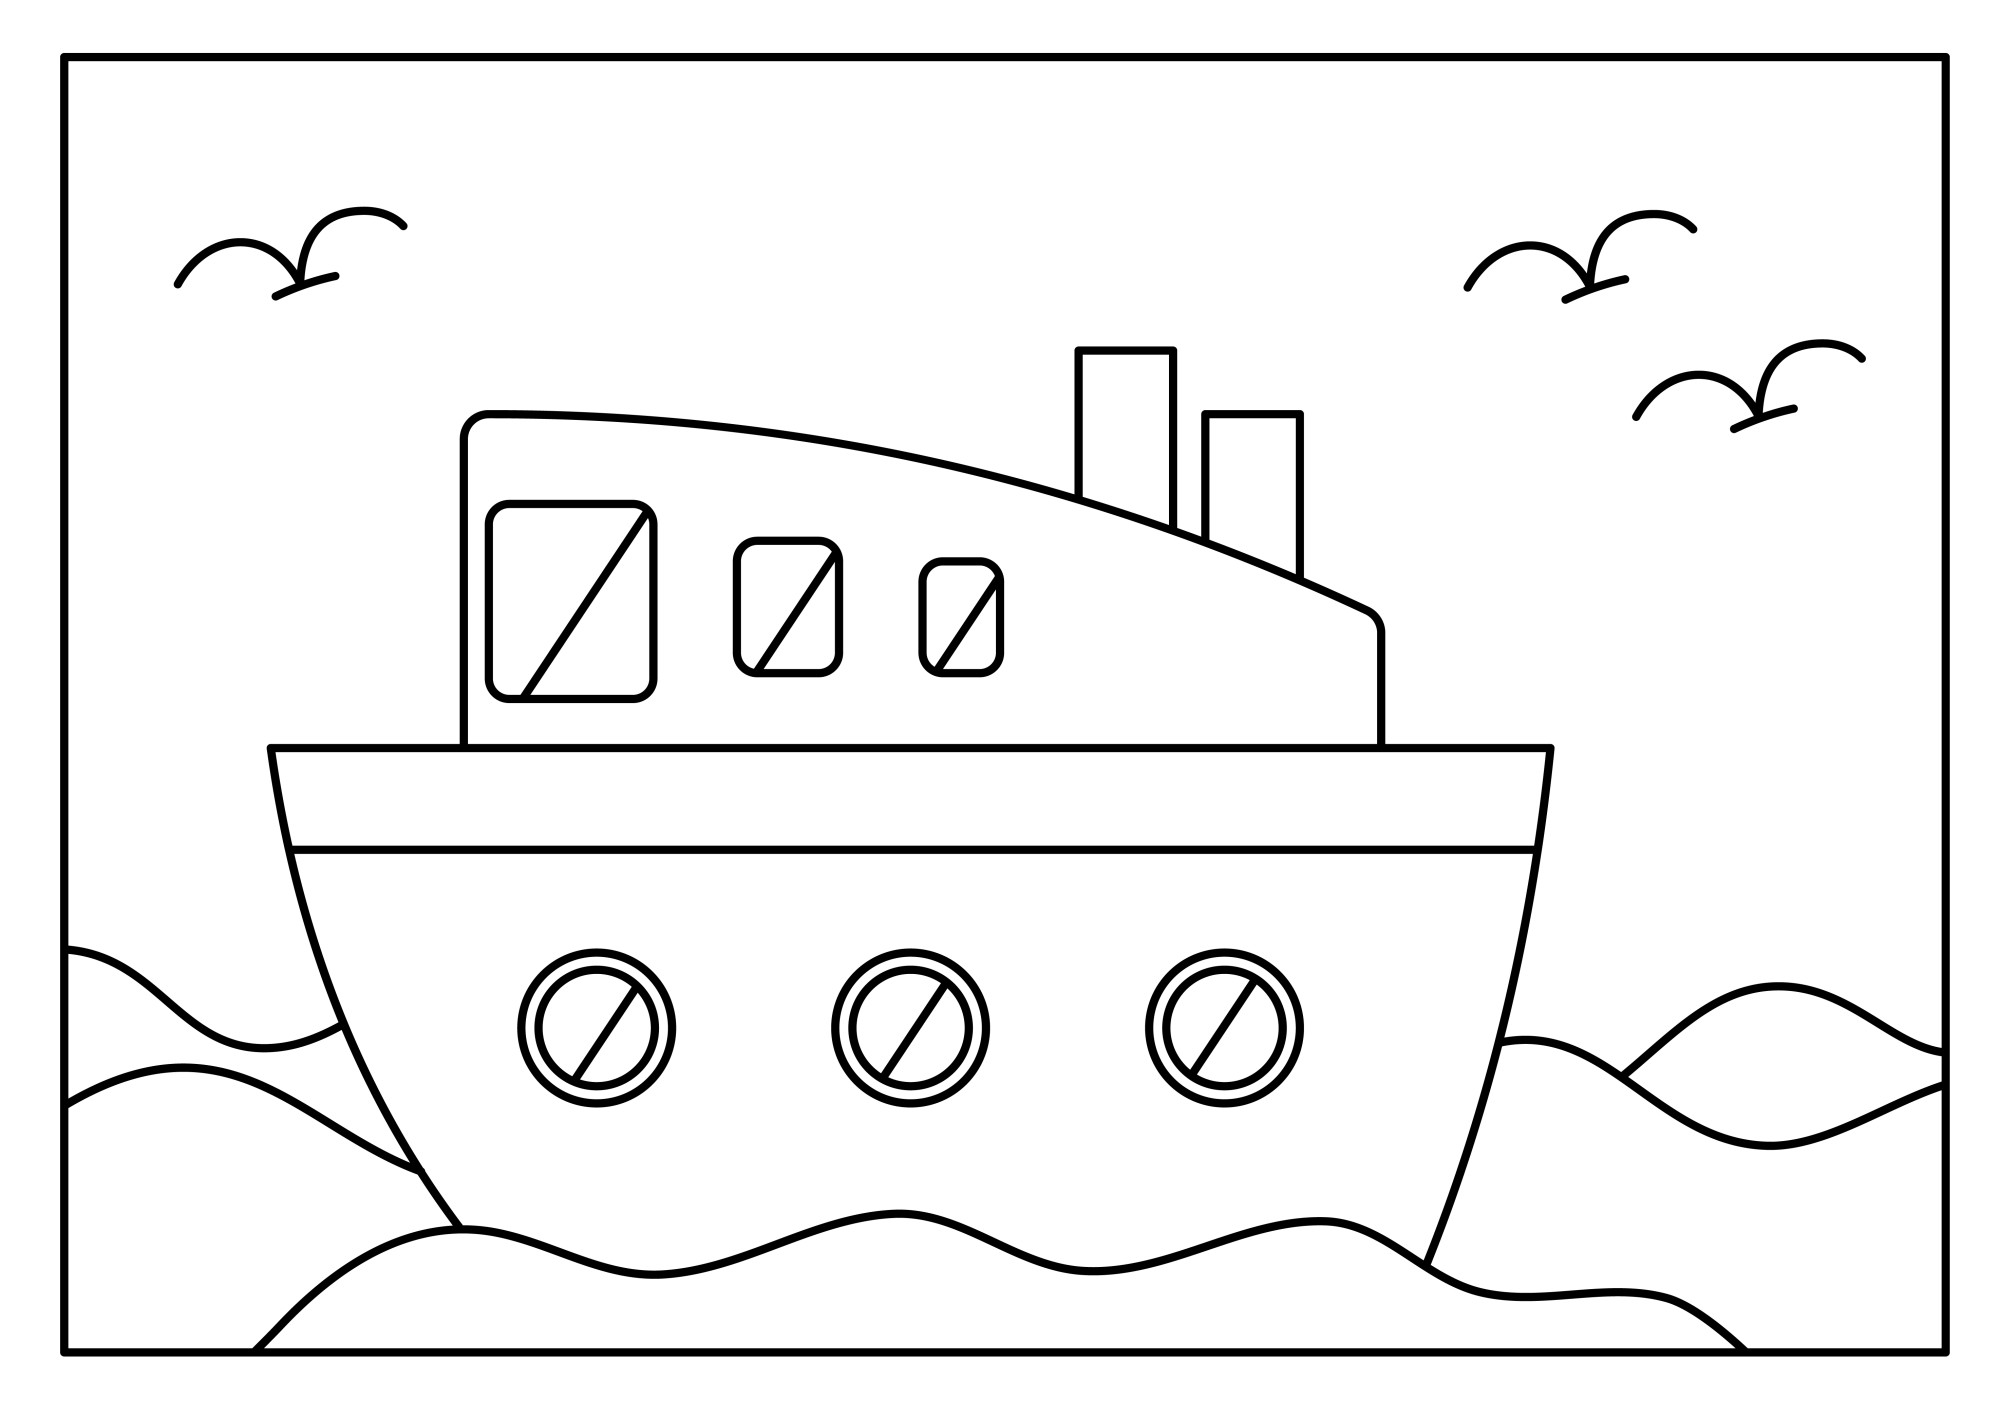 Раскраска для детей: корабль море на фоне неба с чайками